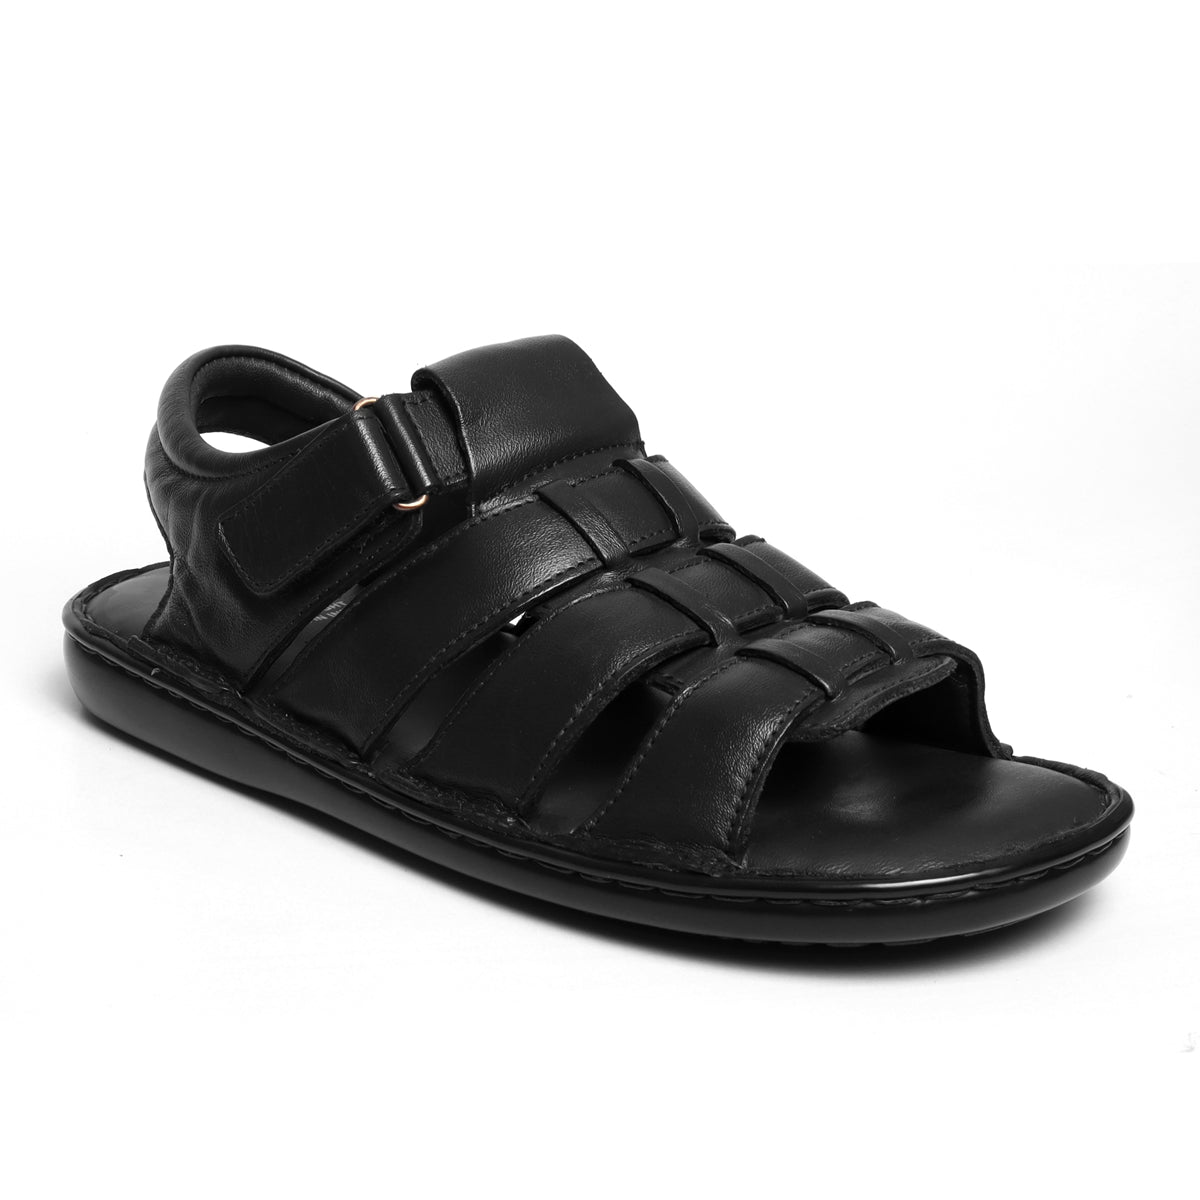 black leather sandals for men